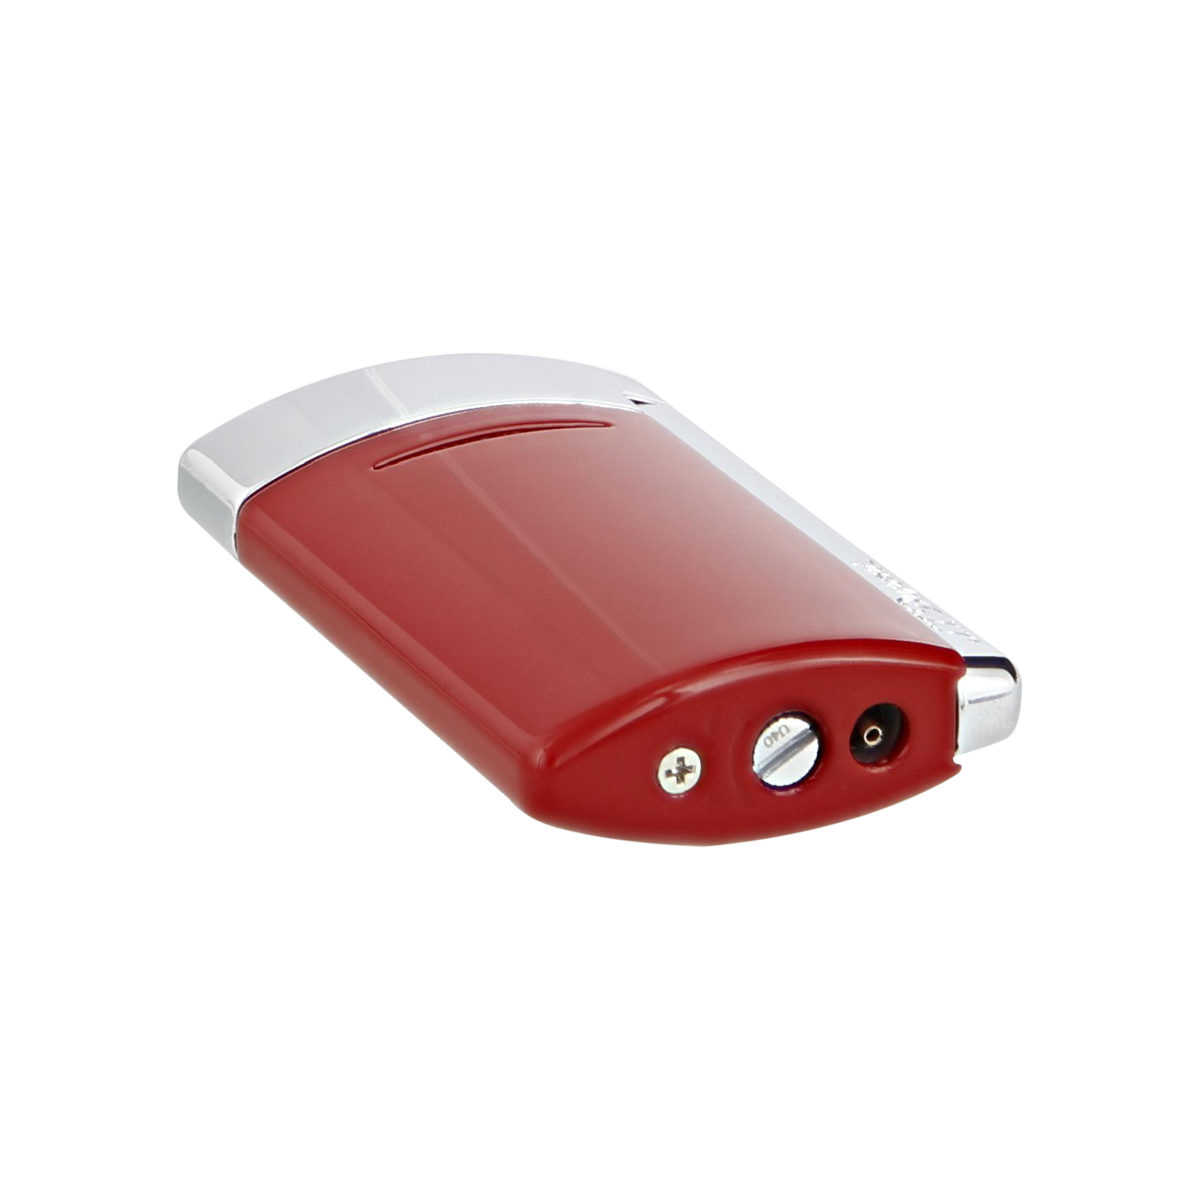 Зажигалка Minijet Minijet 10803 Цвет Красный Отделка ярко-красным лаком и хромом | S.T. Dupont